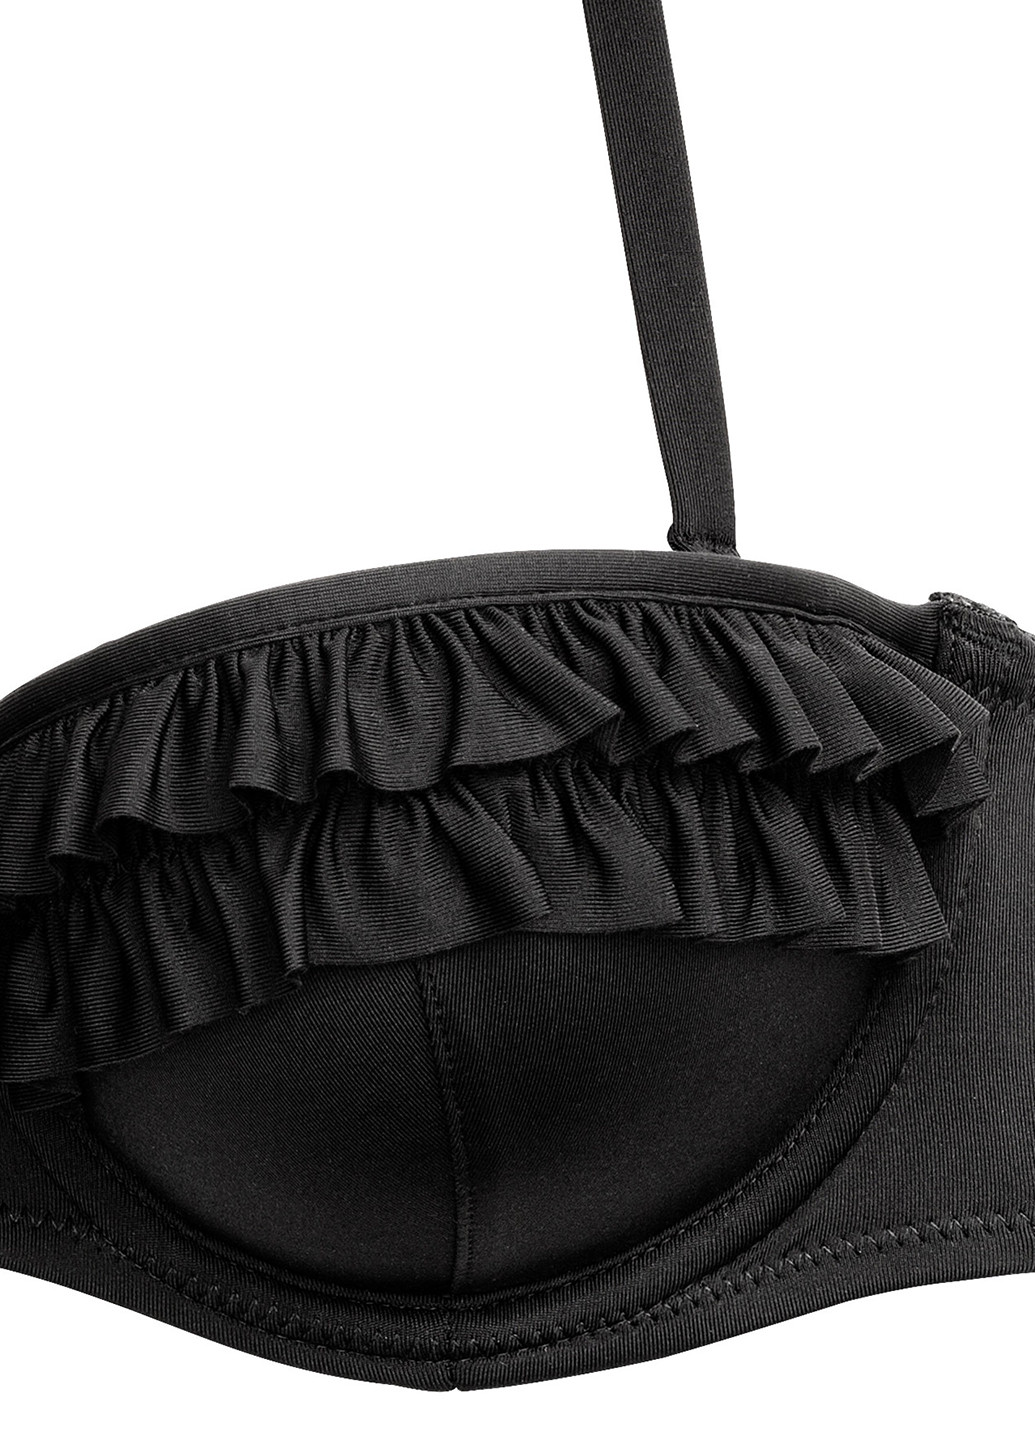 Купальный лиф H&M бандо однотонный чёрный пляжный